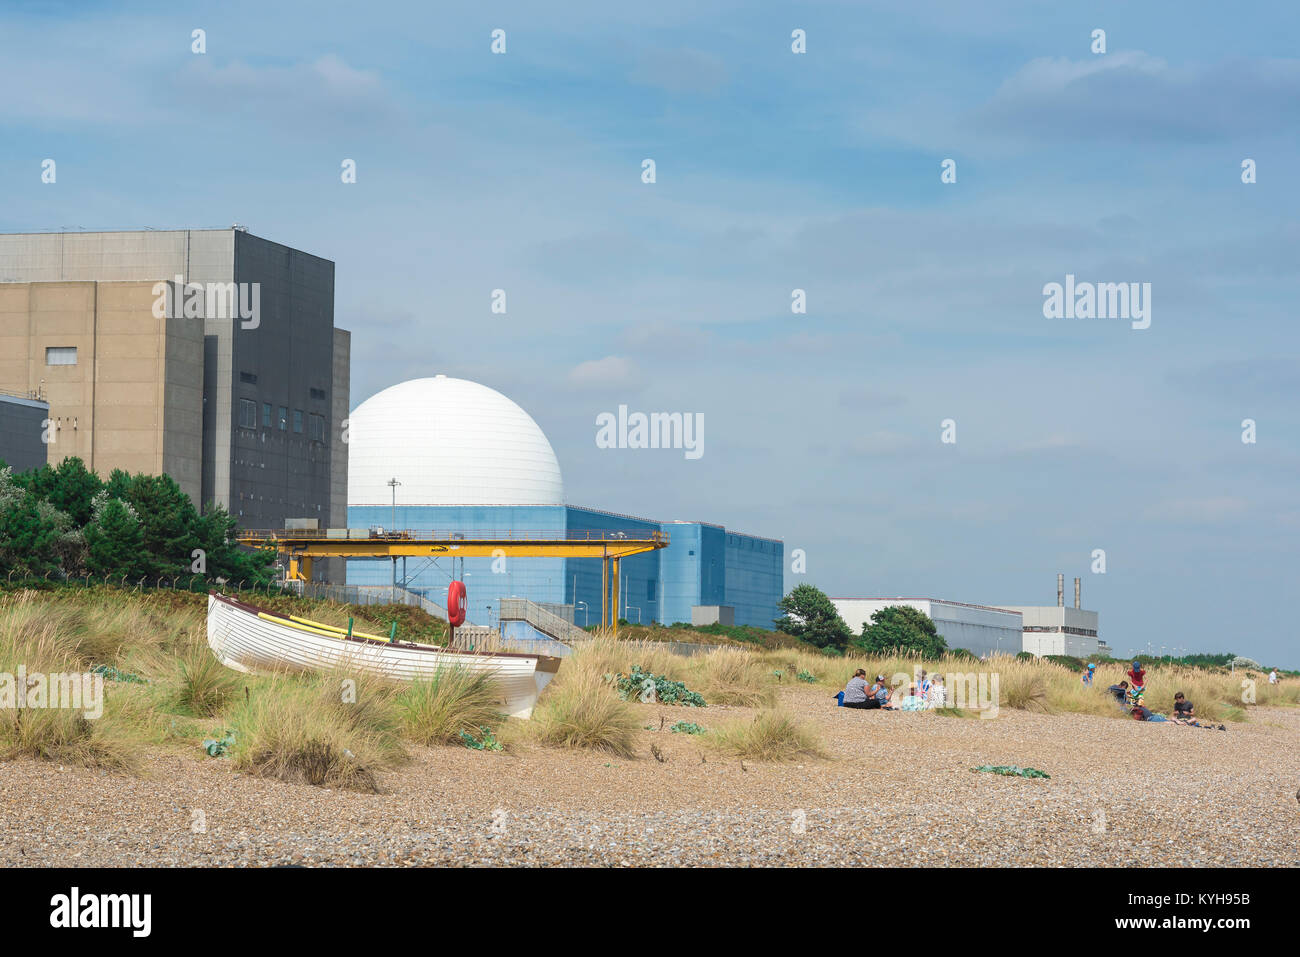 Verano en la playa de Suffolk, vista de las familias que se van a hacer un picnic en una playa de arena cerca de la central nuclear de Sizewell en la costa de Suffolk, Inglaterra, Reino Unido. Foto de stock